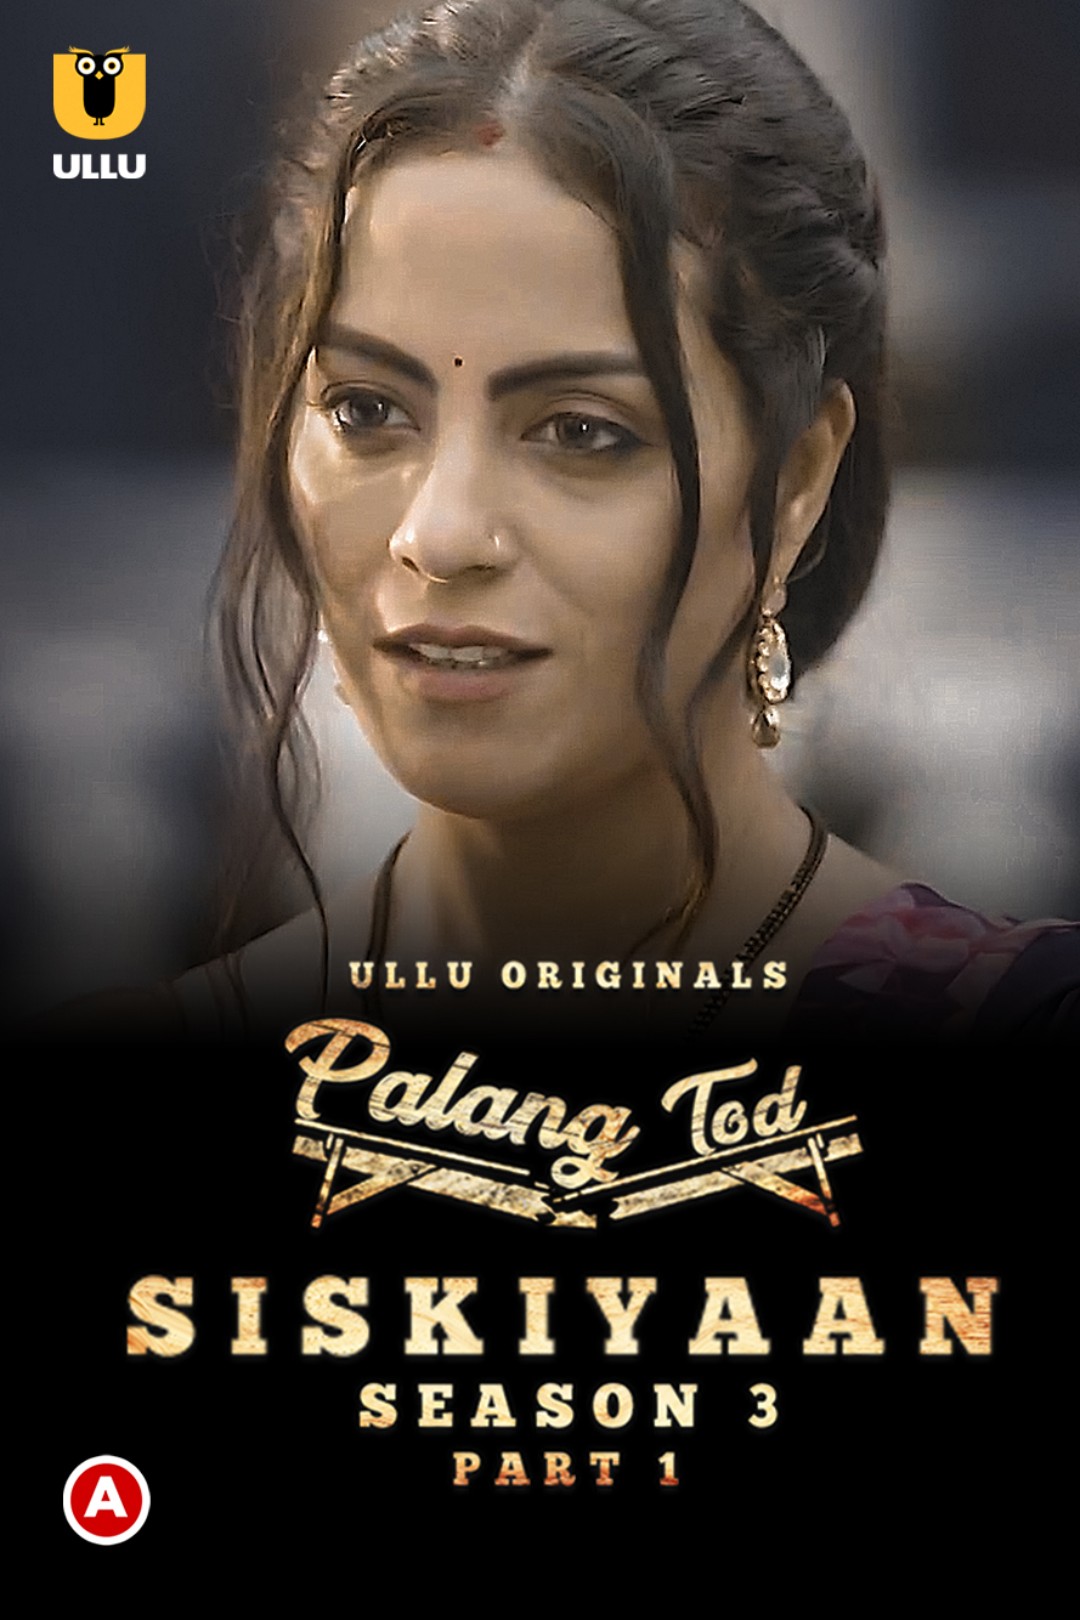 18+ Palang Tod (Siskiyaan S03) Part 1 2022 Hindi Ullu Web Series 720p HDRip 600MB Download